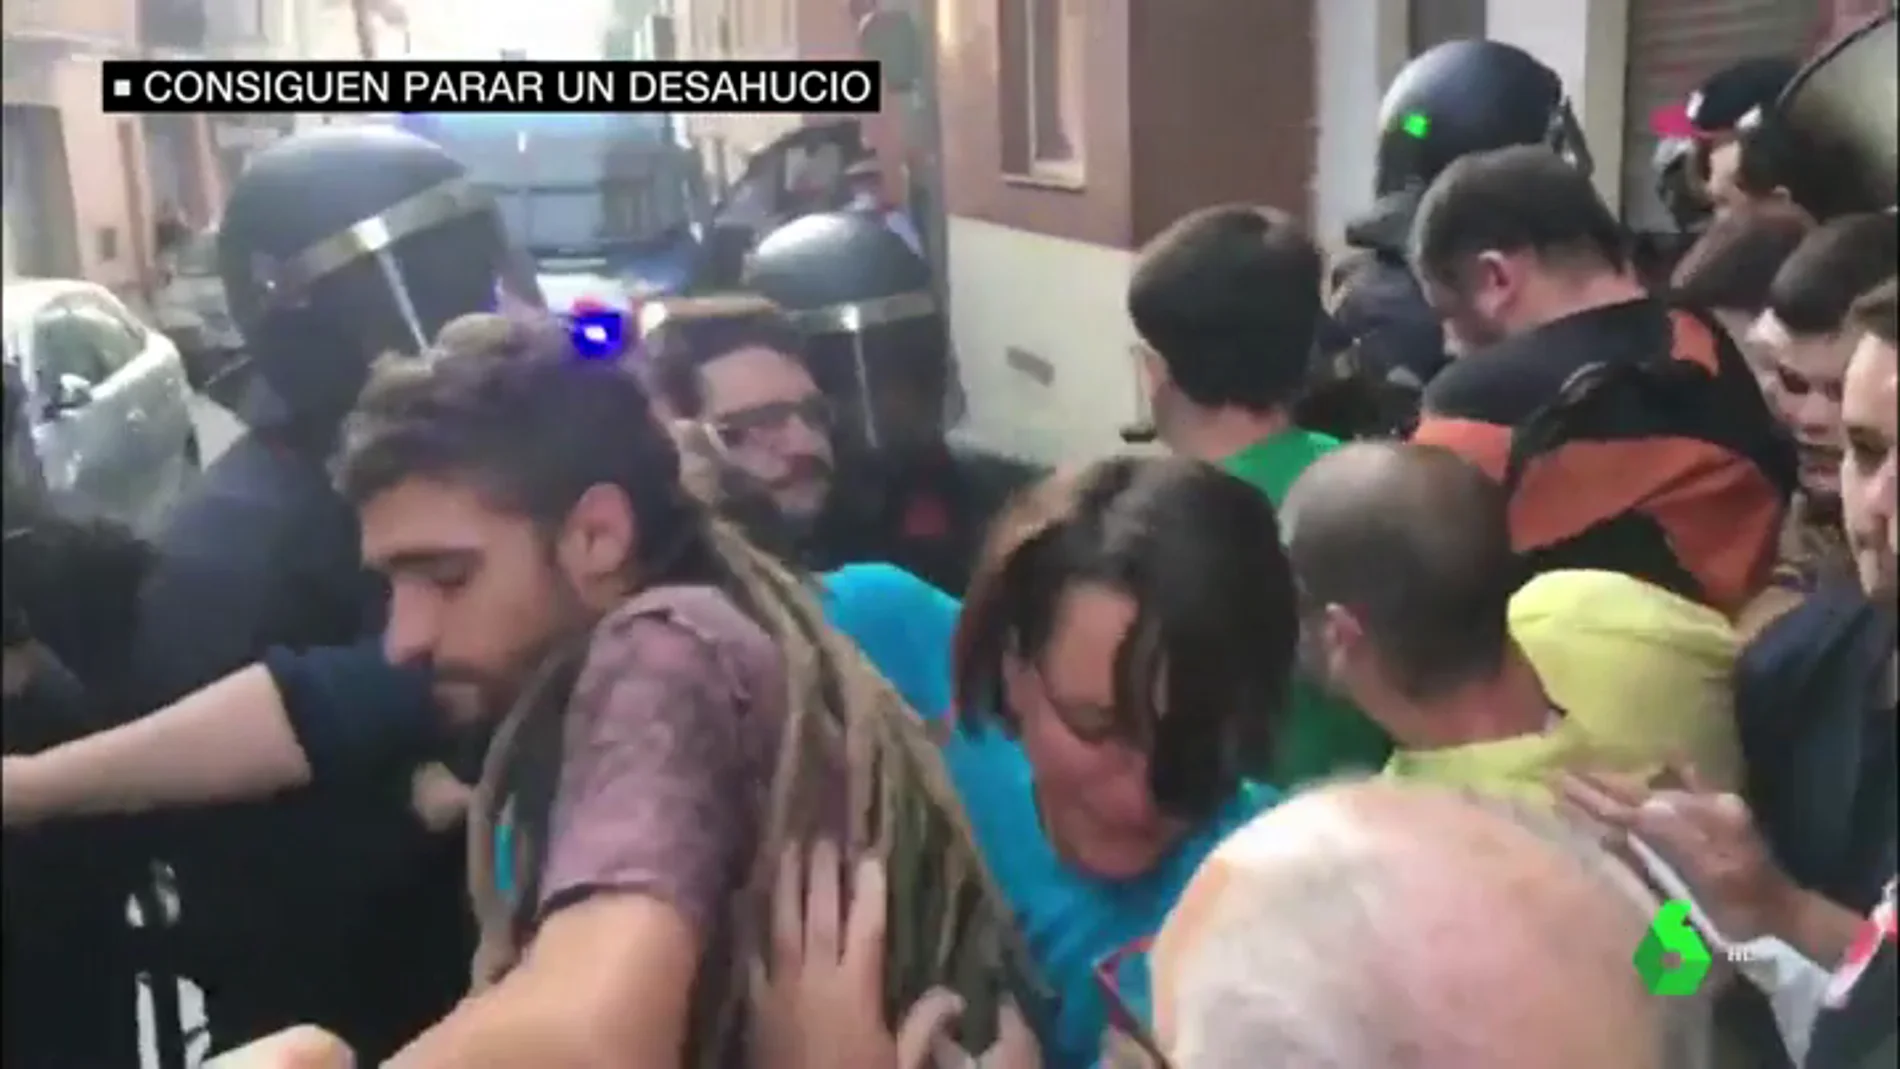 Casi un centenar de vecinos y activistas impiden un desahucio en Premiá de Mar, Barcelona